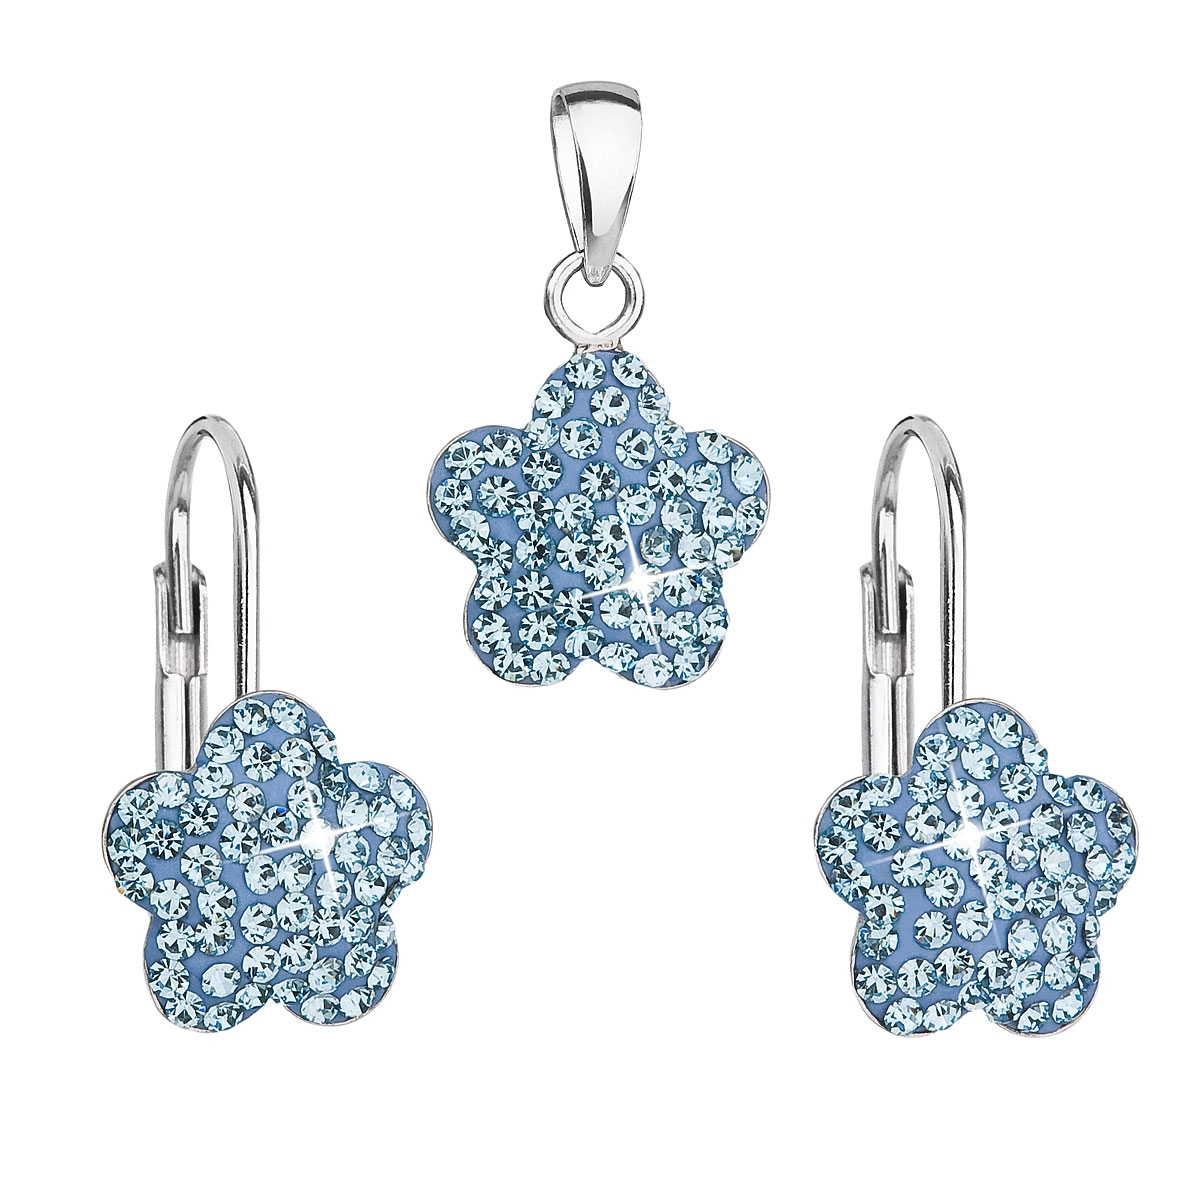 Súprava strieborných šperkov - kvetinky s kryštálmi Crystals from Swarovski ® Aquamarine